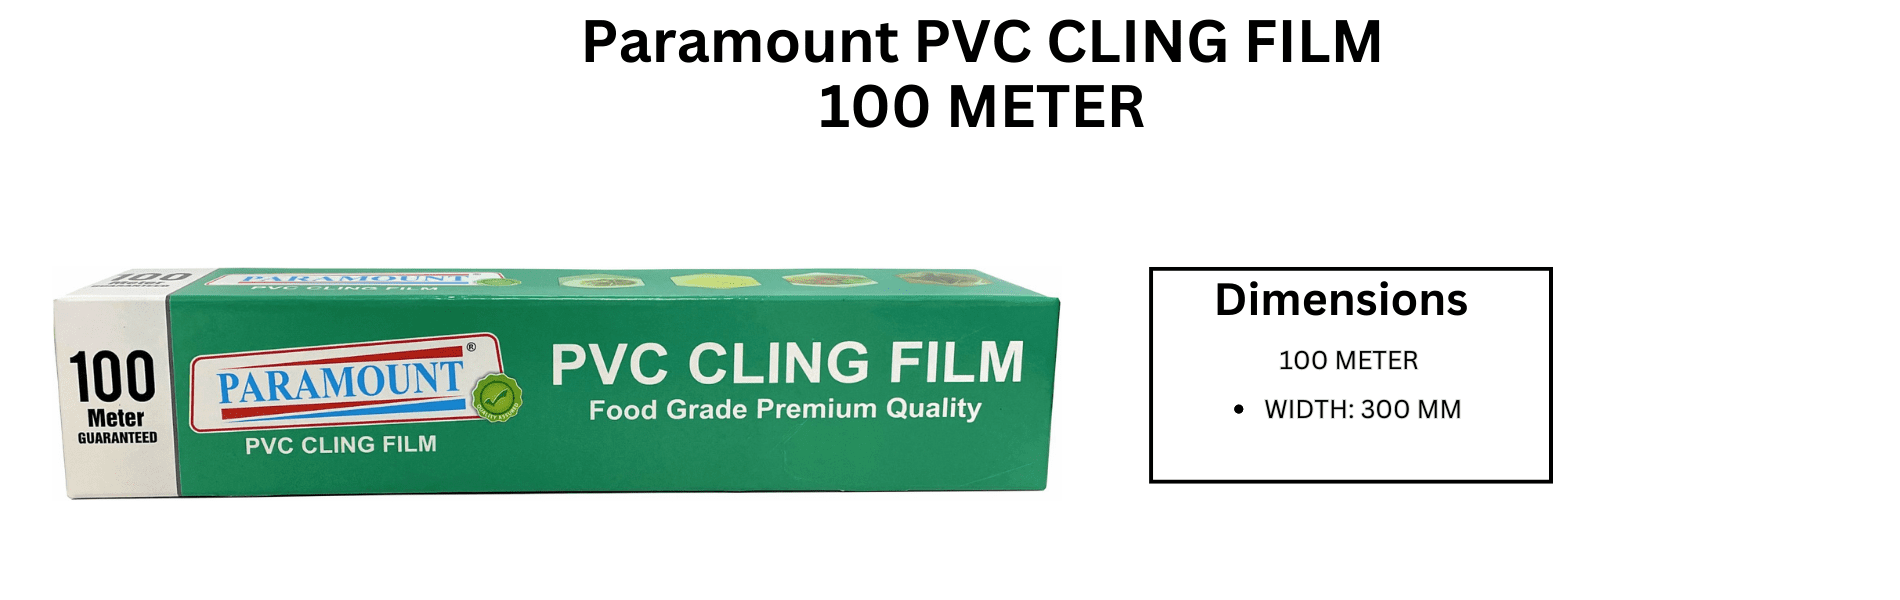 paramount PVC Cling film 100 Meter